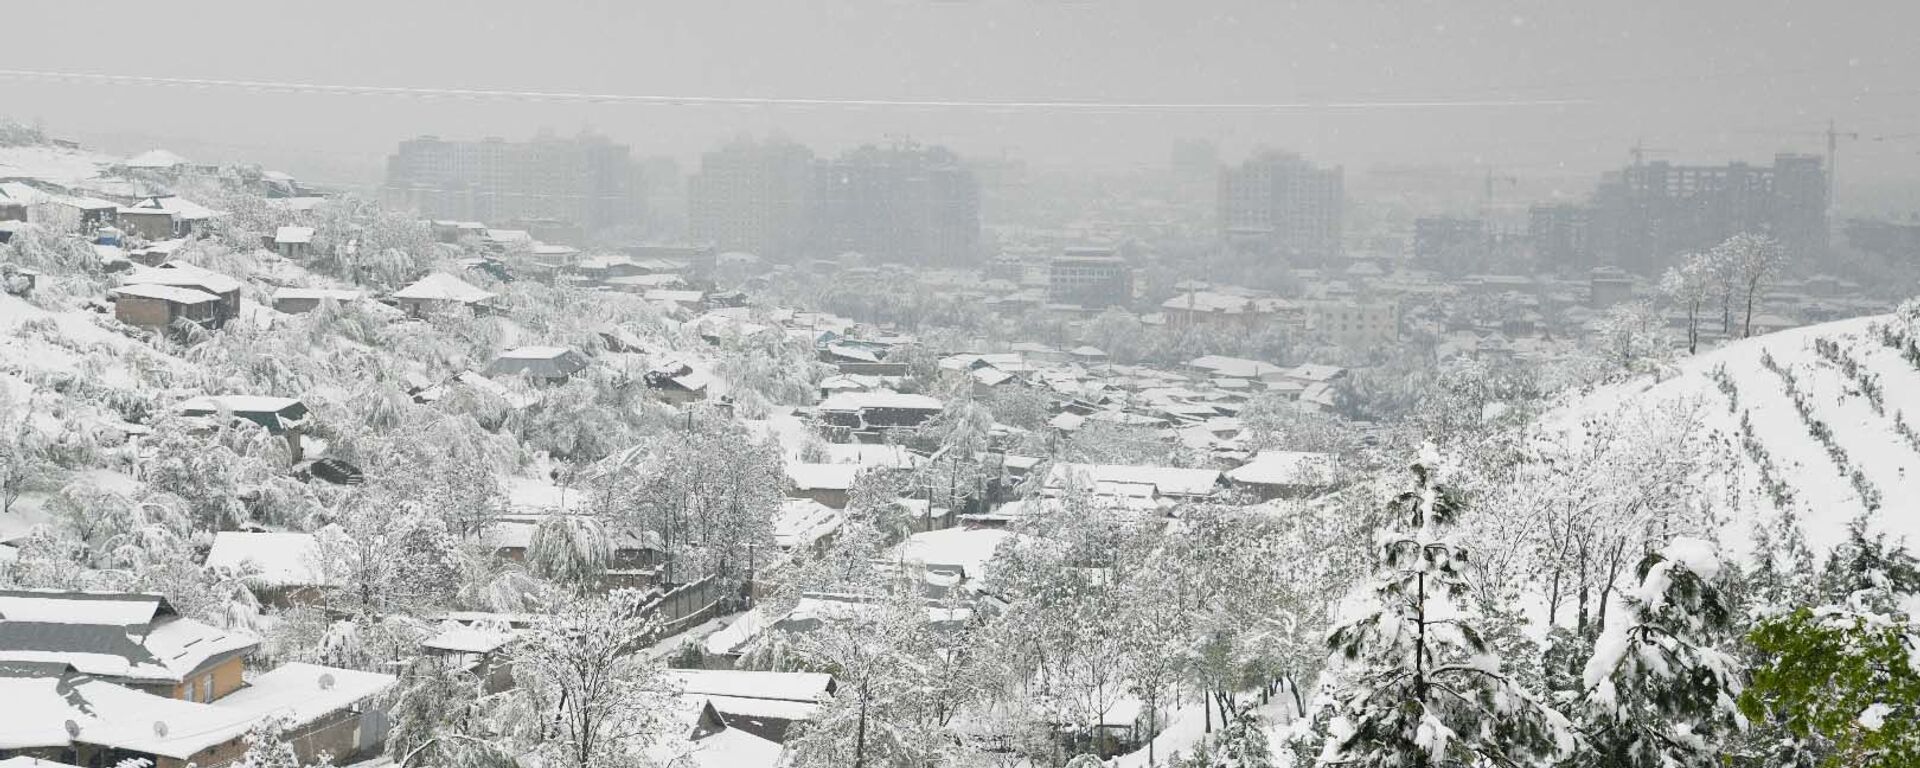 Снегопад в Душанбе - Sputnik Тоҷикистон, 1920, 12.01.2021